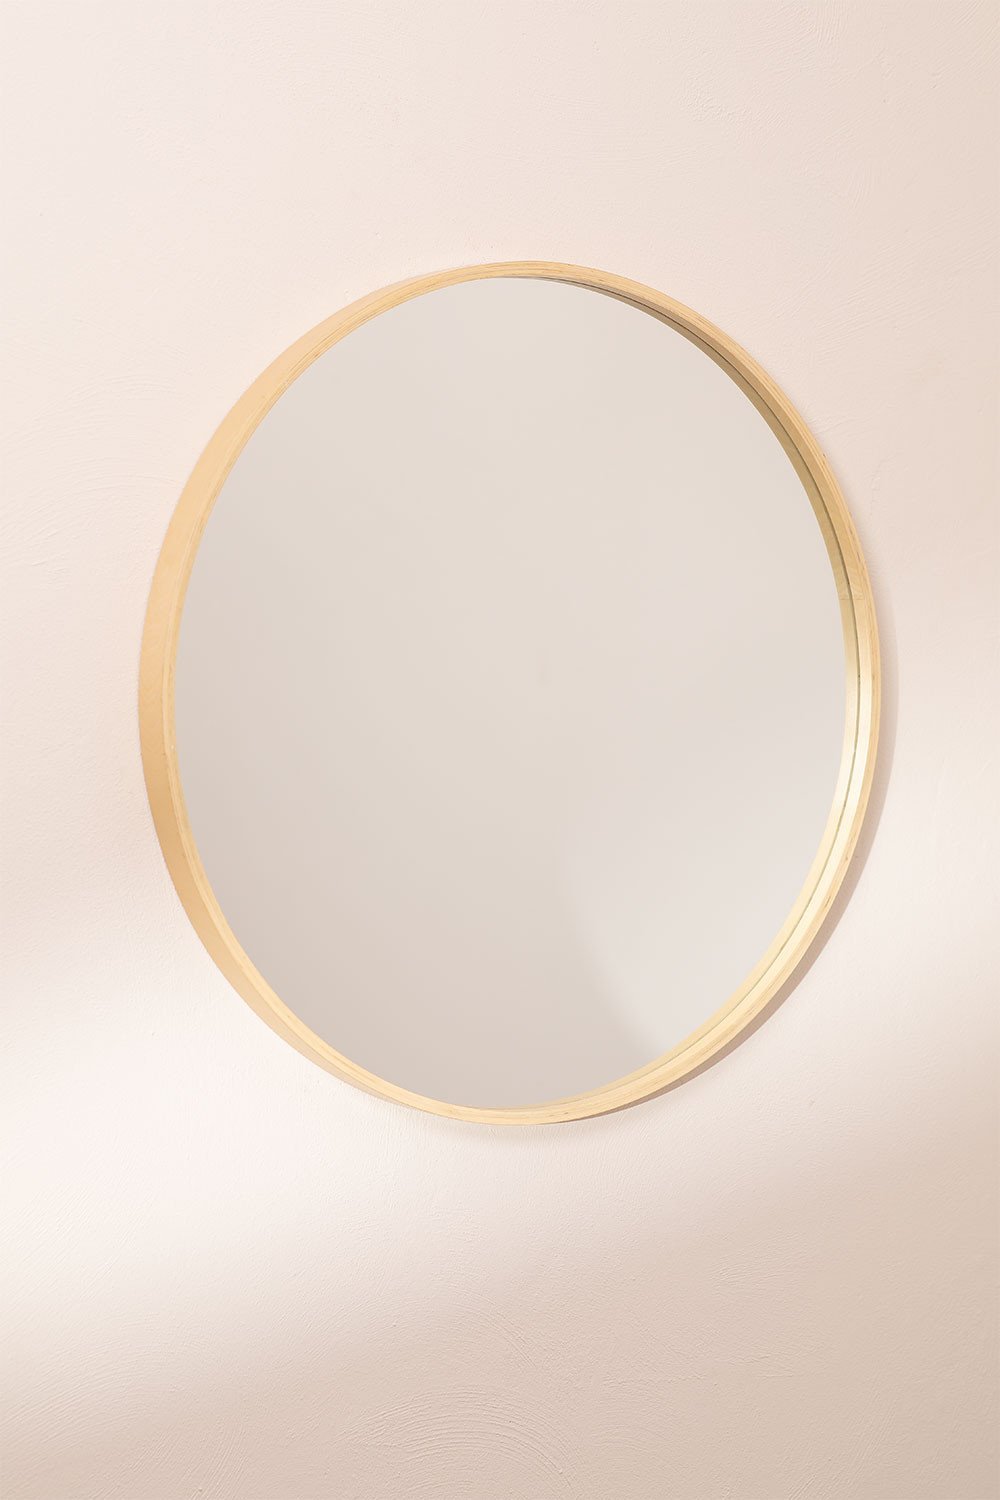 Specchio da parete rotondo in legno Yiro, immagine della galleria 2